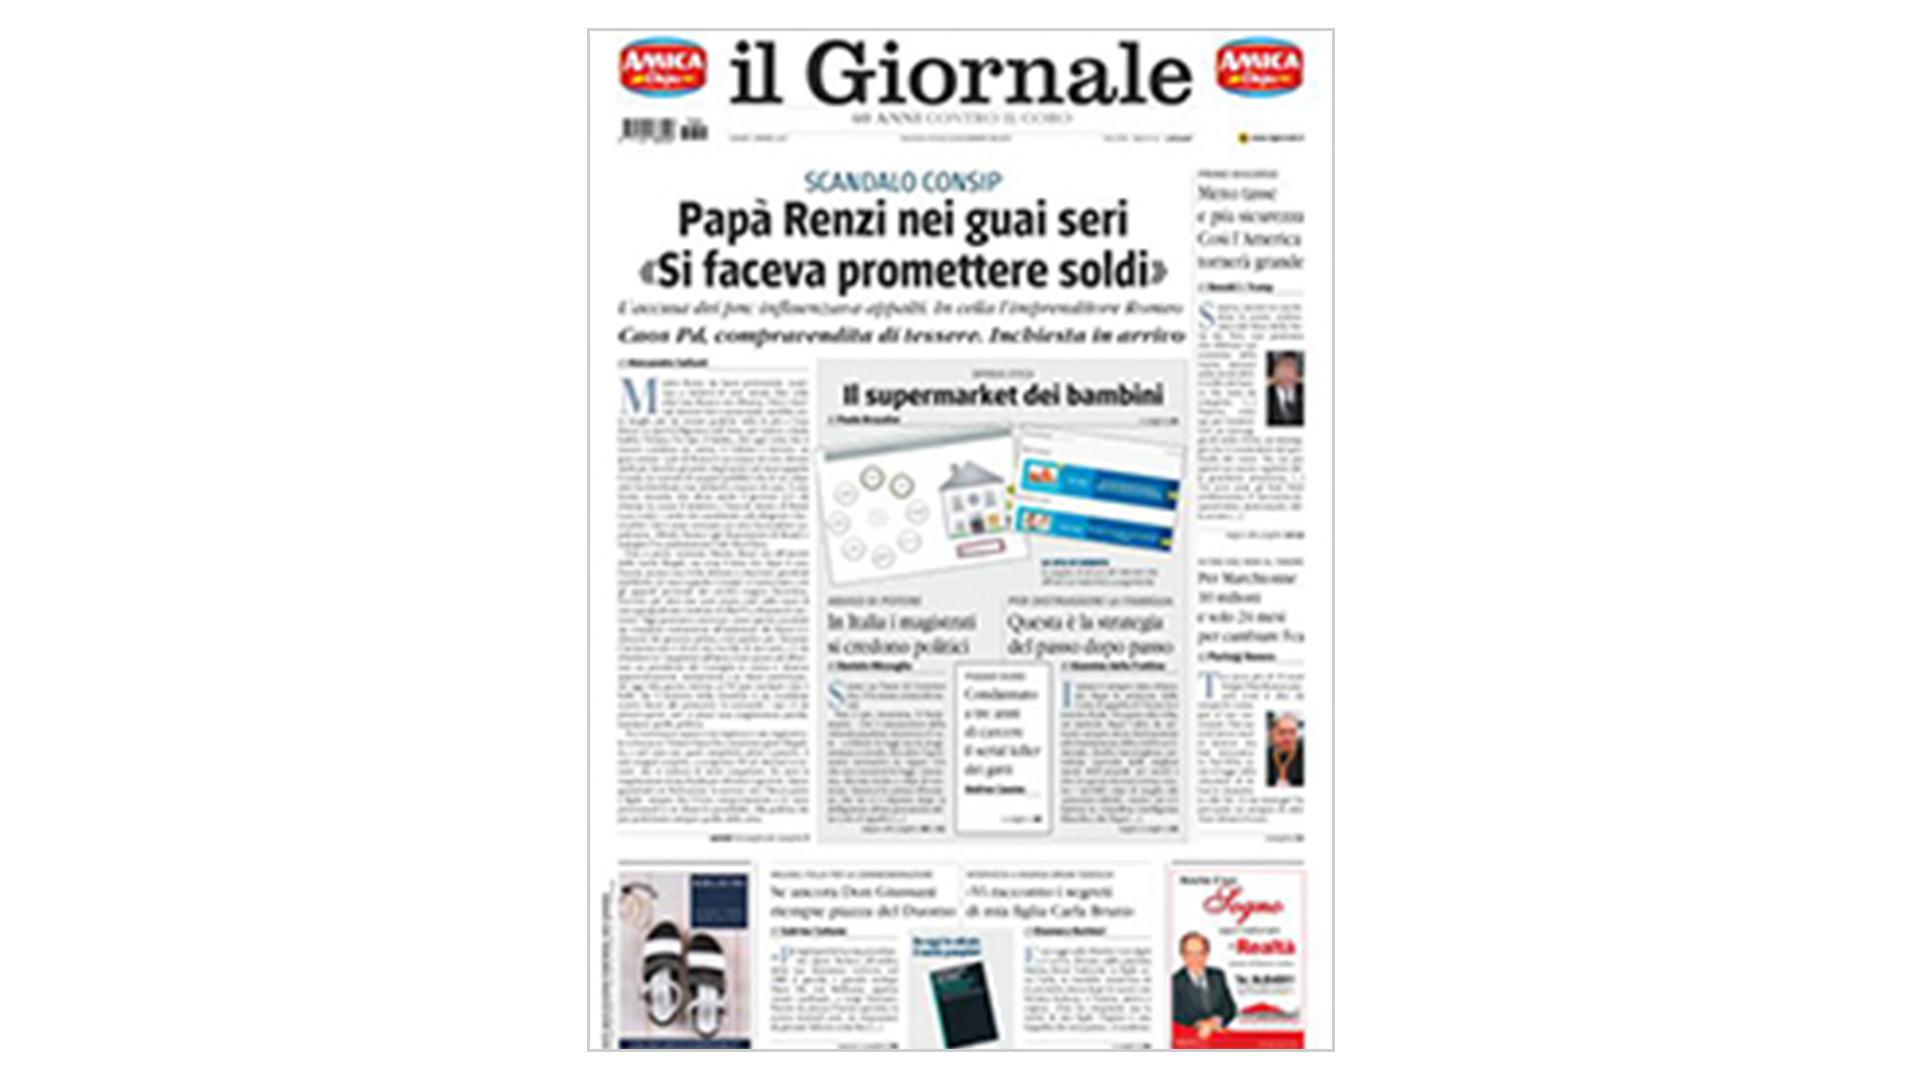 Il Giornale - Giugno 2017 - Giessegi.it